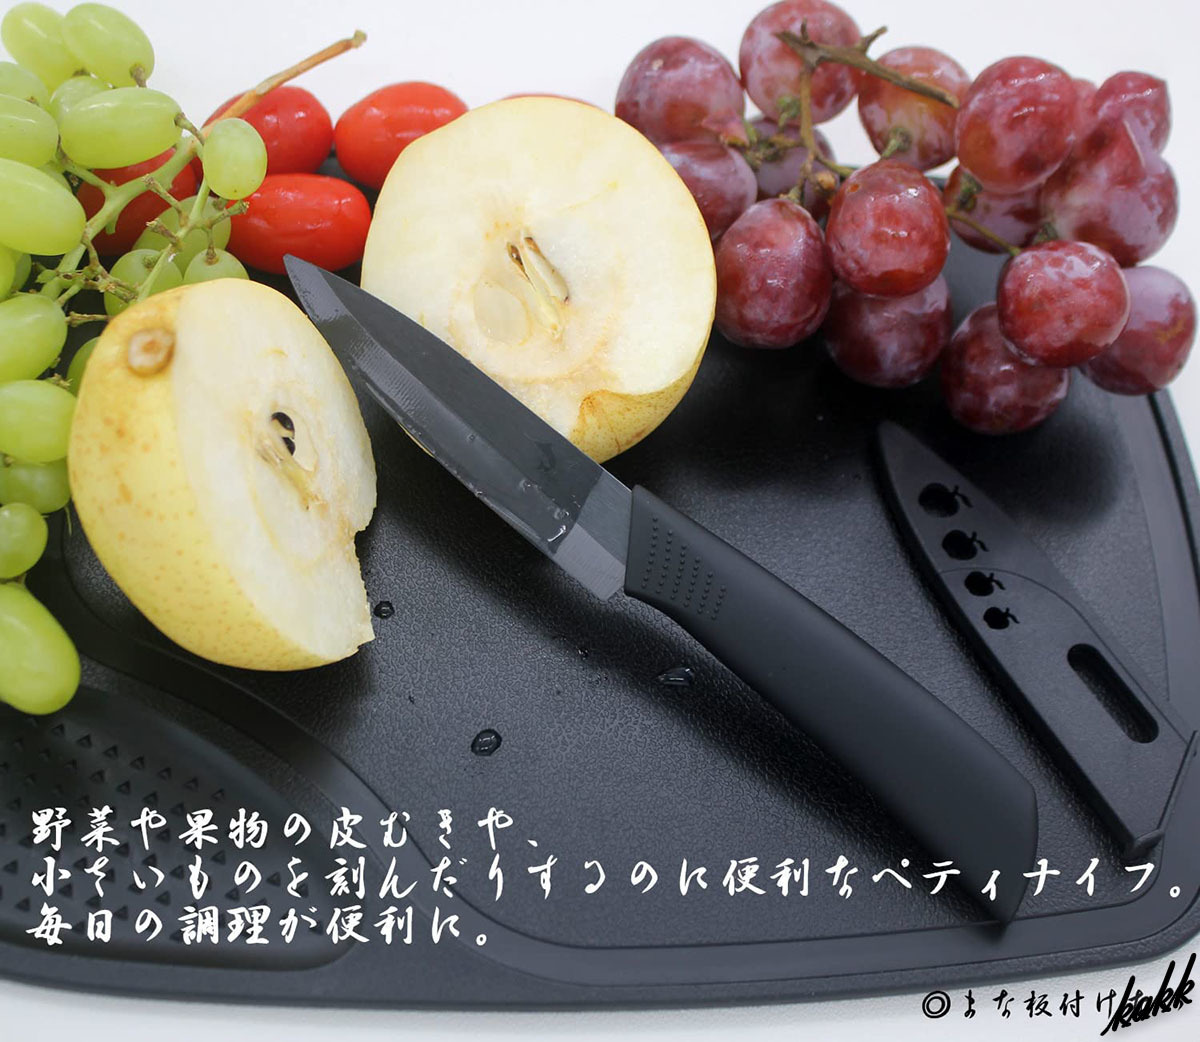 【クールなブラックコーティング】 ペティナイフ パン切りナイフ シェフナイフ 3本セット フルーツ 果物 包丁 料理 キッチン ツール